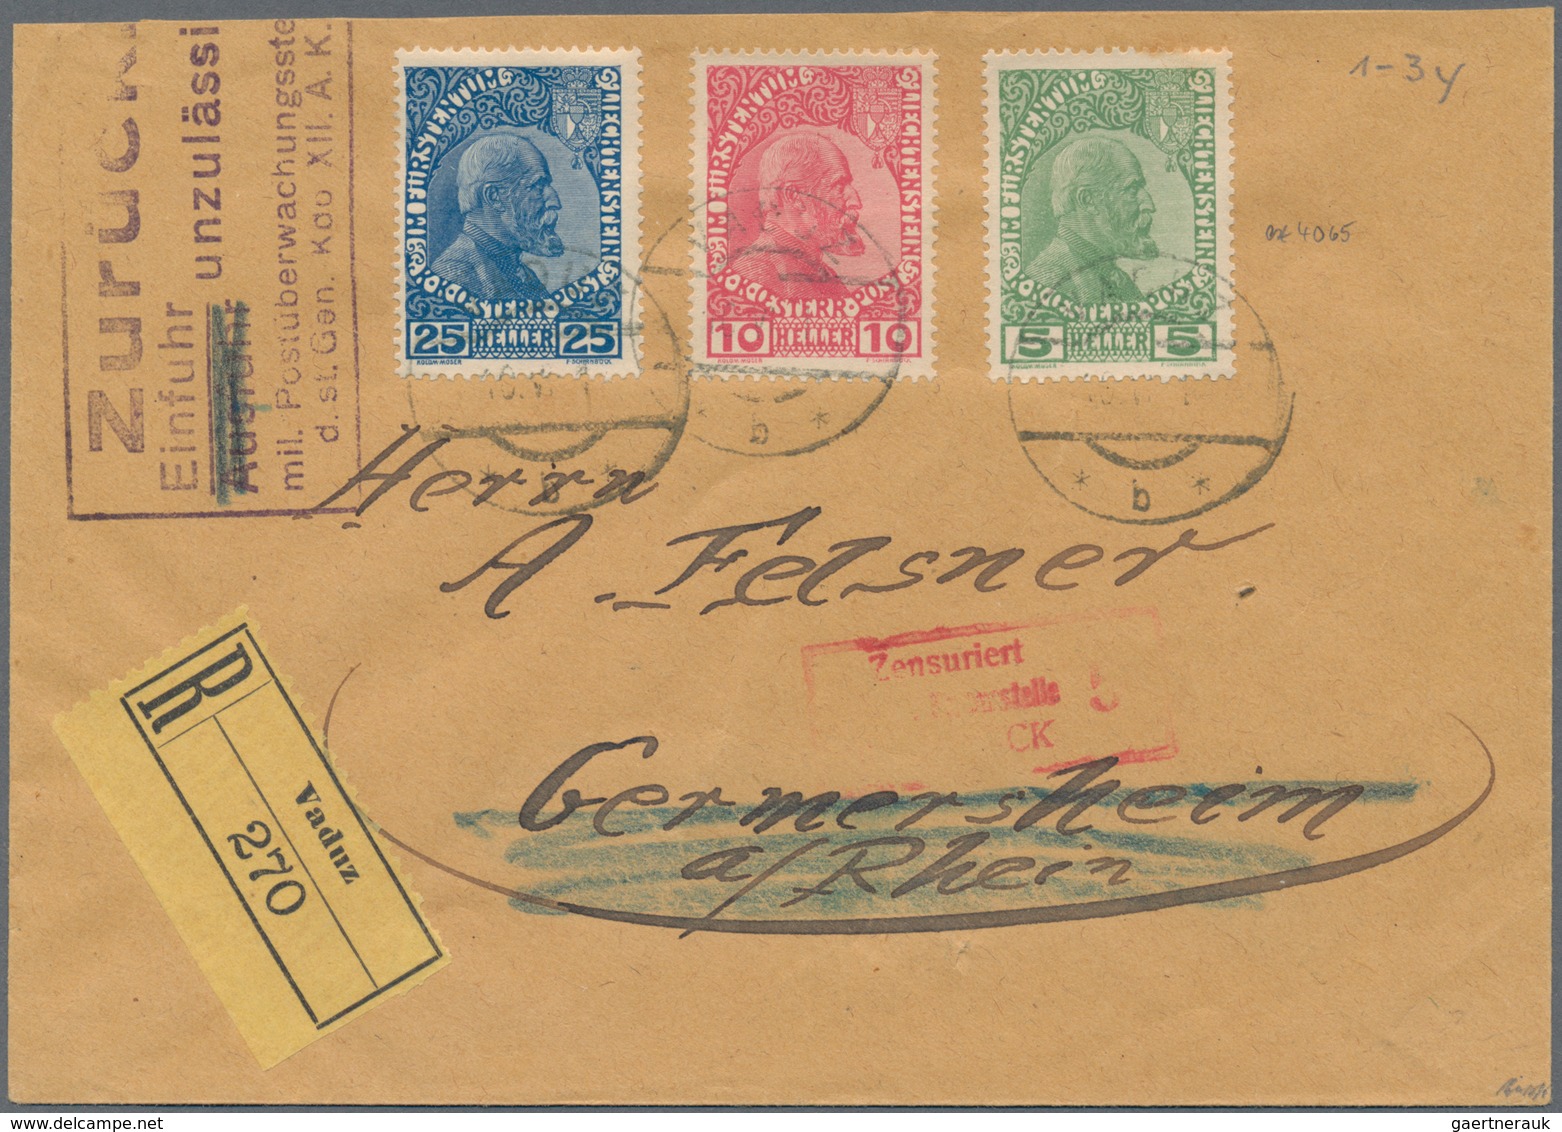 Liechtenstein: 1912, 5 H Green To 25 H Blue On Registered Cover (shortend At Top) With Censor Ship F - Ongebruikt